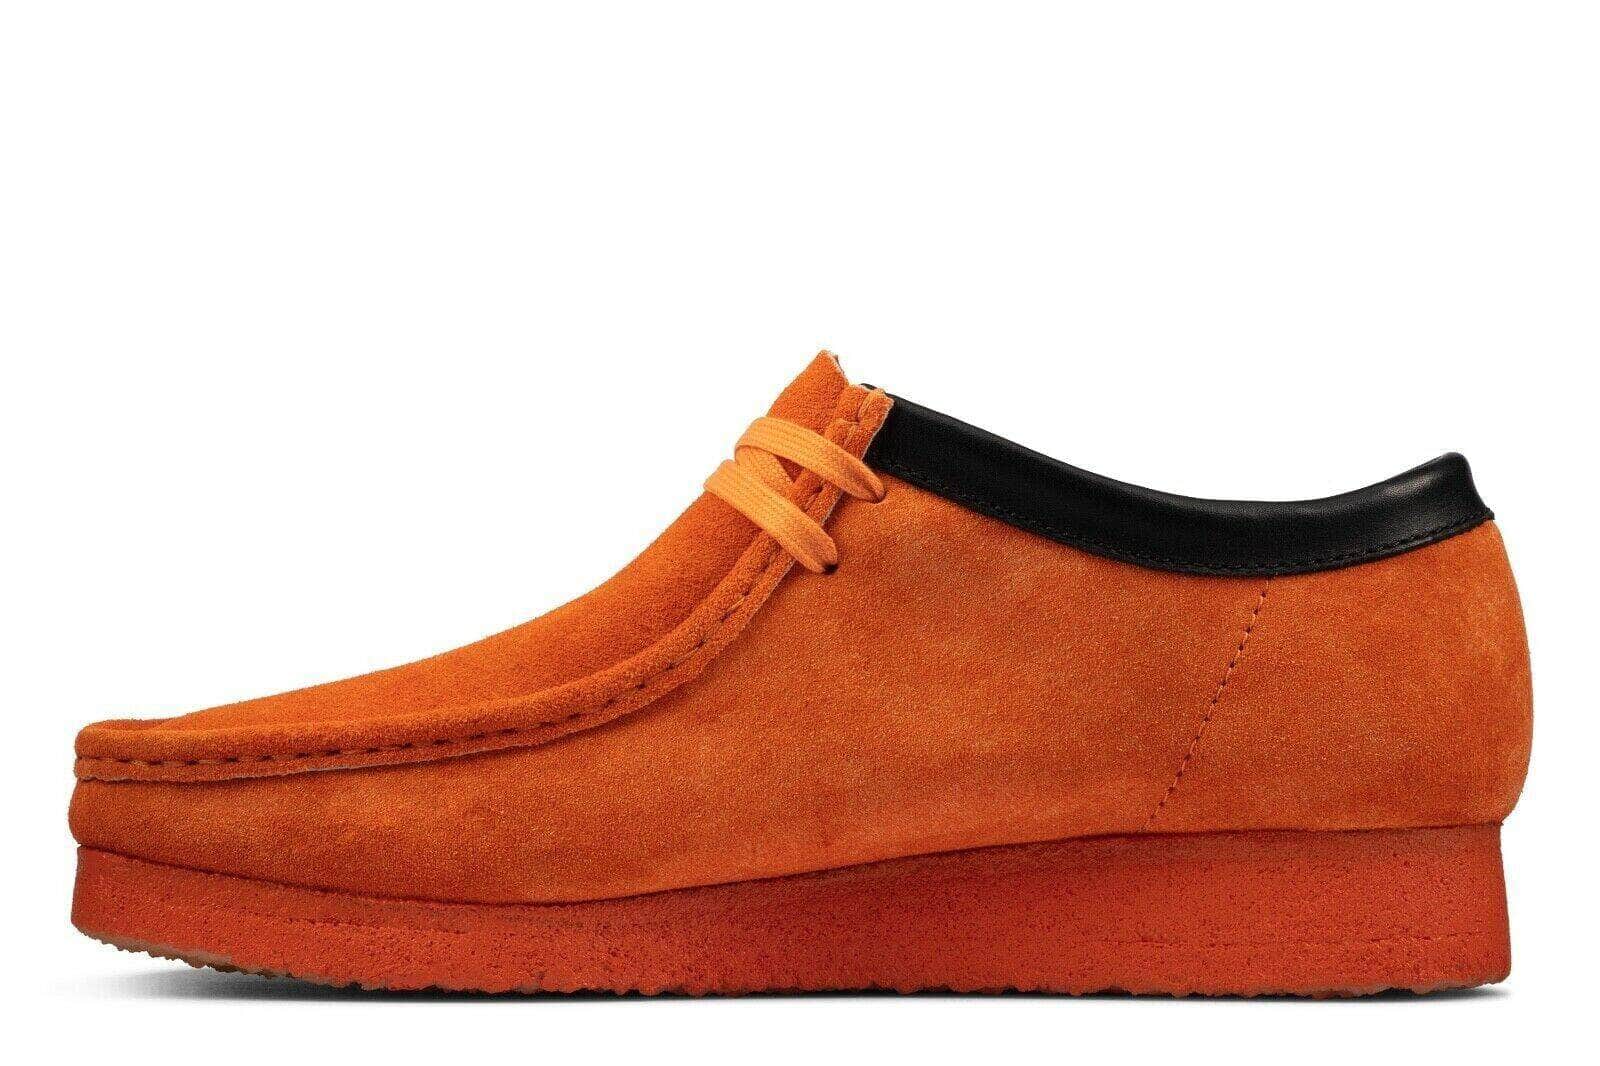 Clarks FOOTWEAR Clarks Originals Wallabee Shoes - Men's